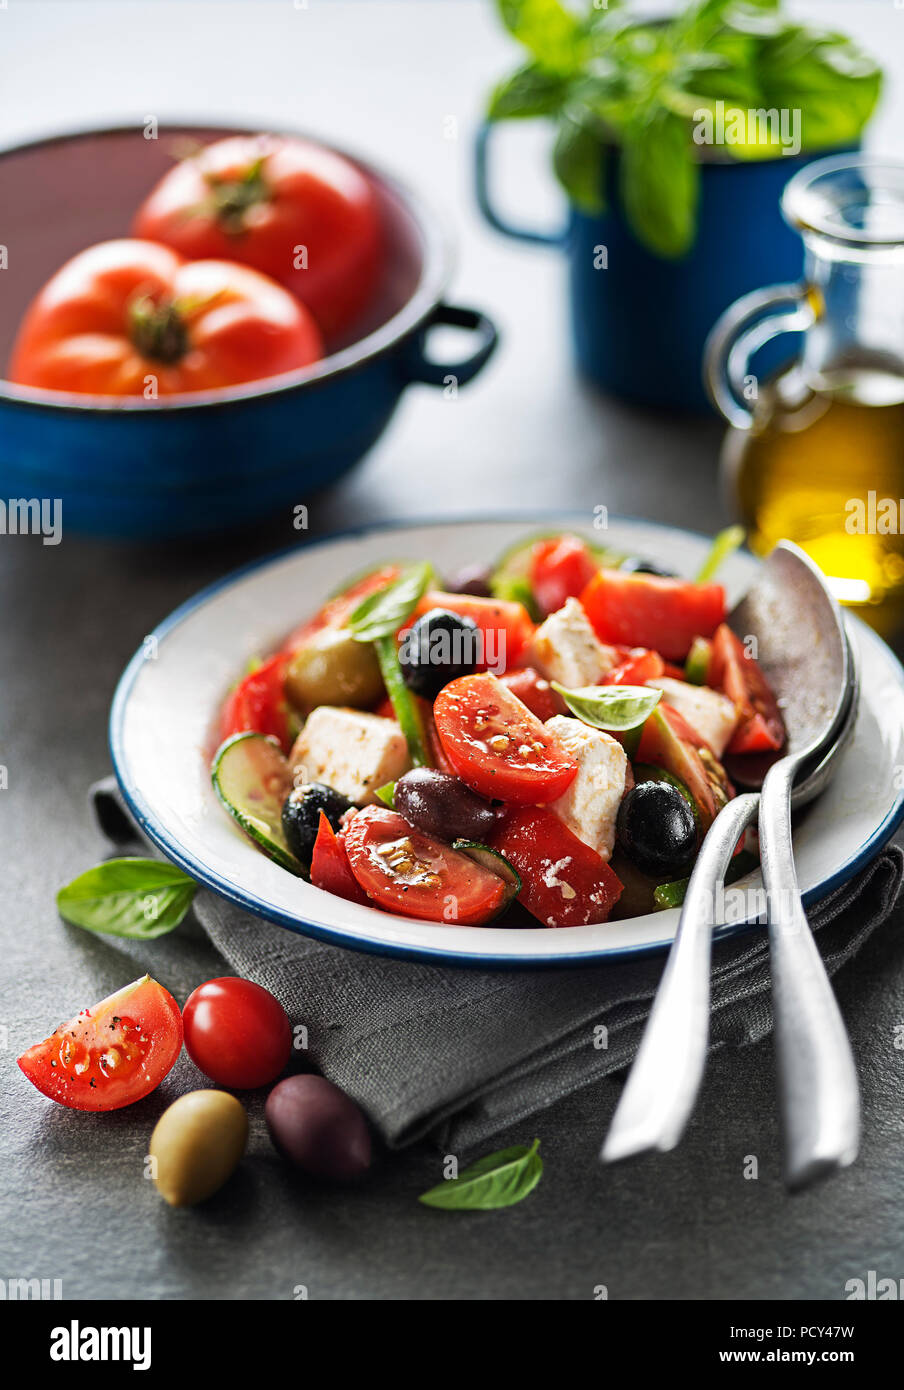 Salade de fromage feta et légumes frais. Salade grecque. Banque D'Images